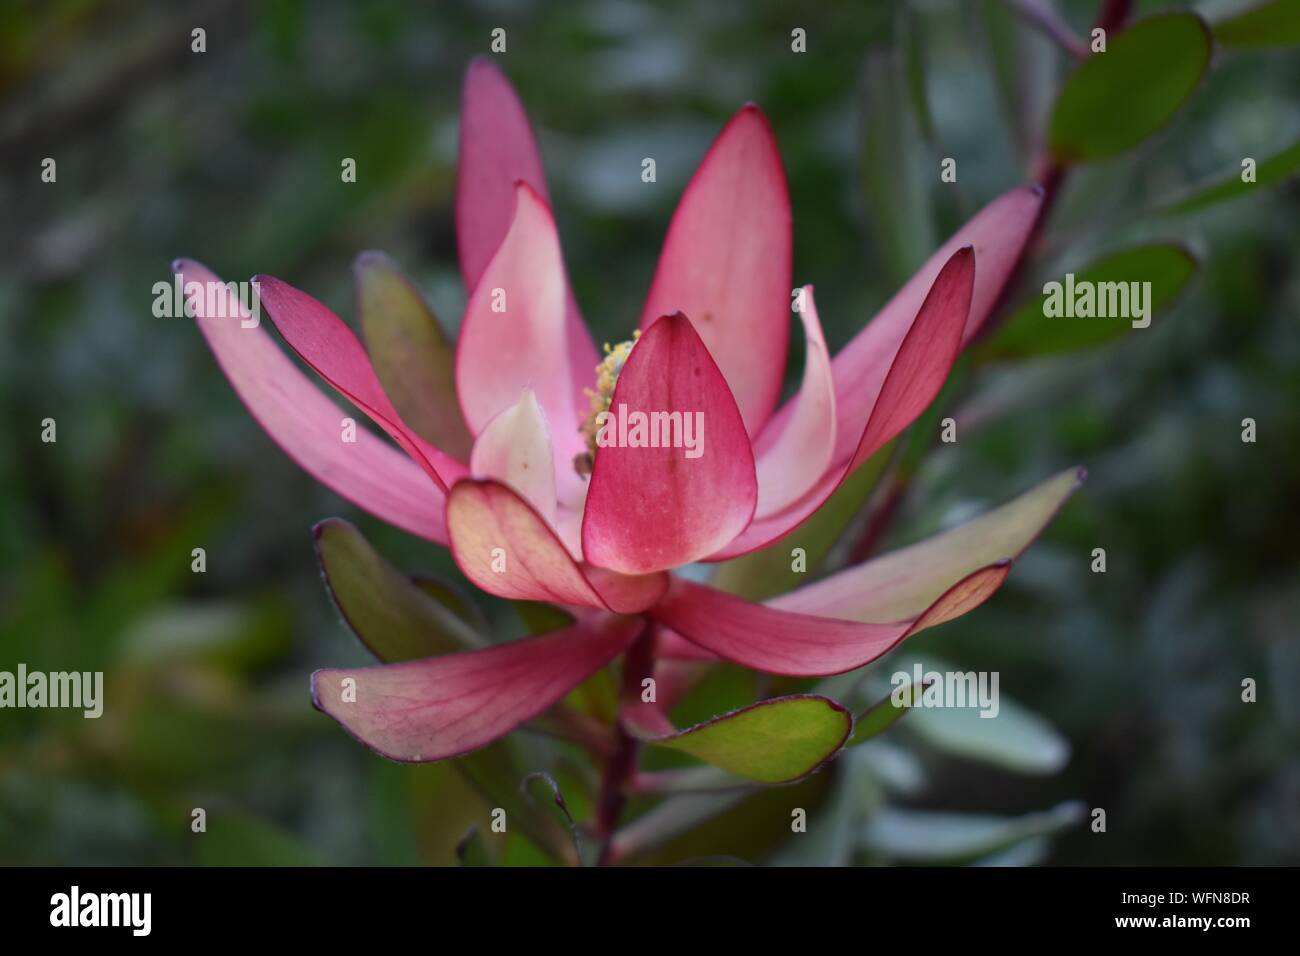 Schöne Fotos von Blumen im botanischen Garten in der grossen Insel von Hawaii genommen. Stockfoto